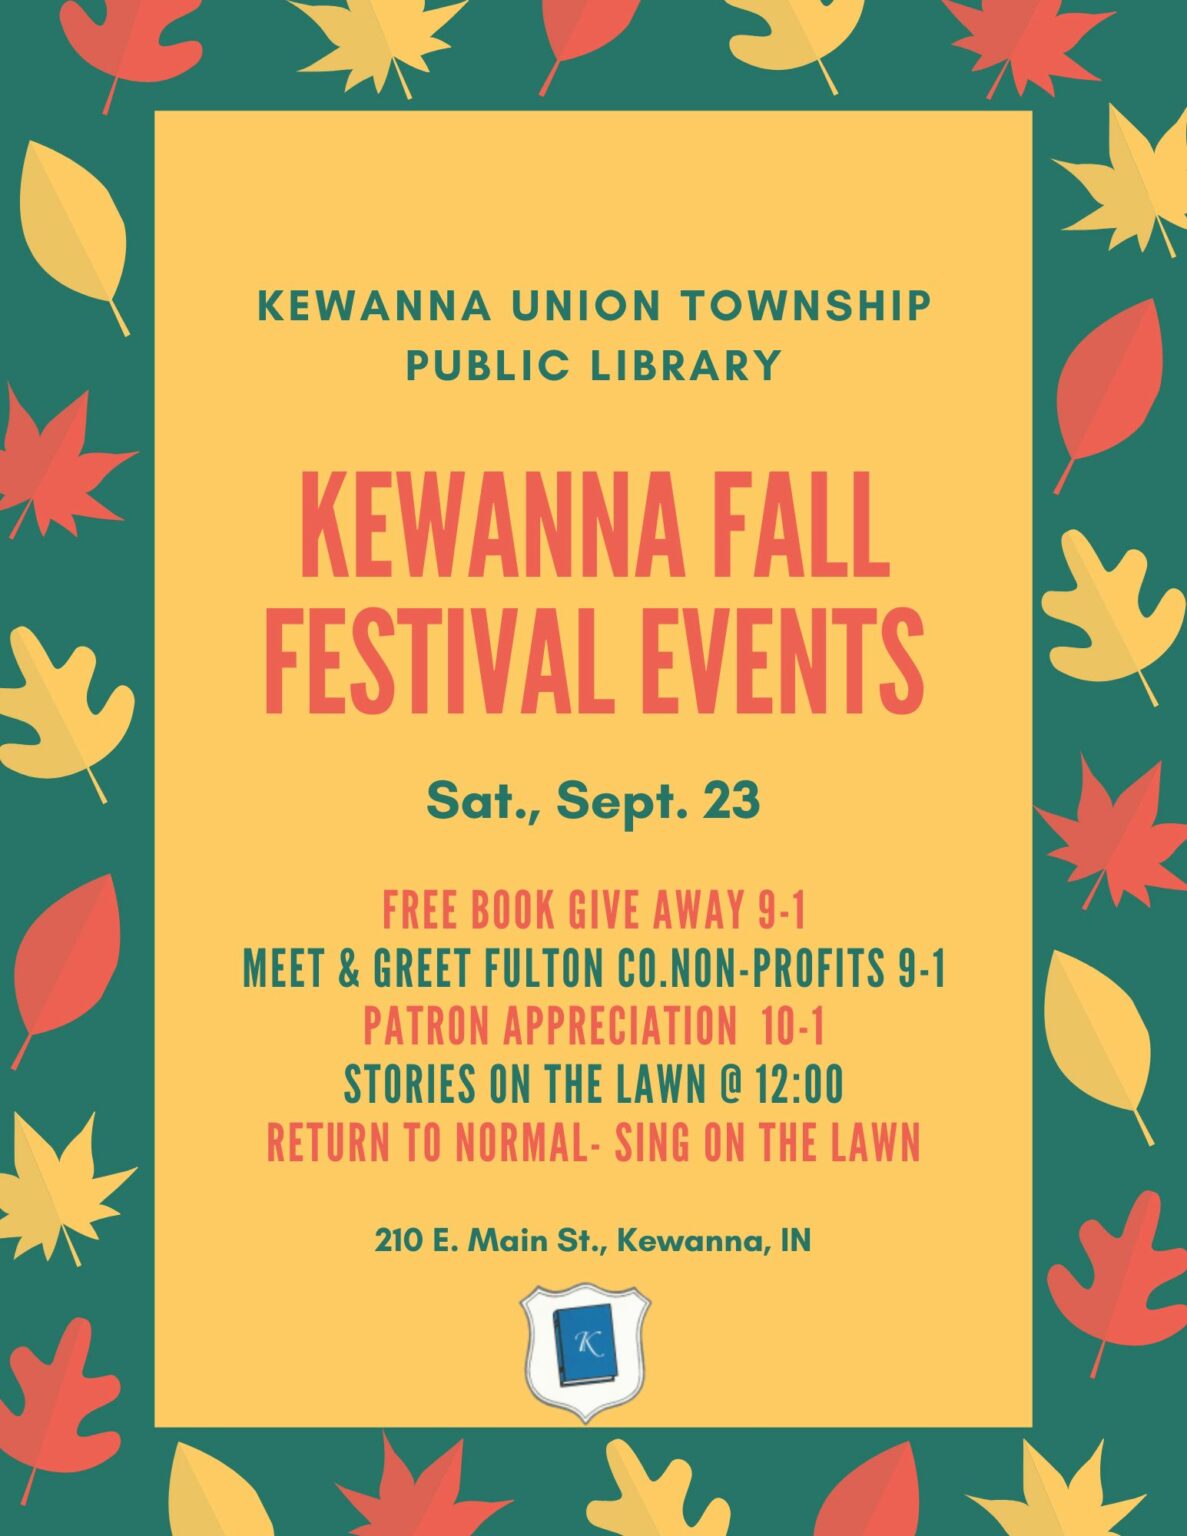 KewannaUnion Township Public Library